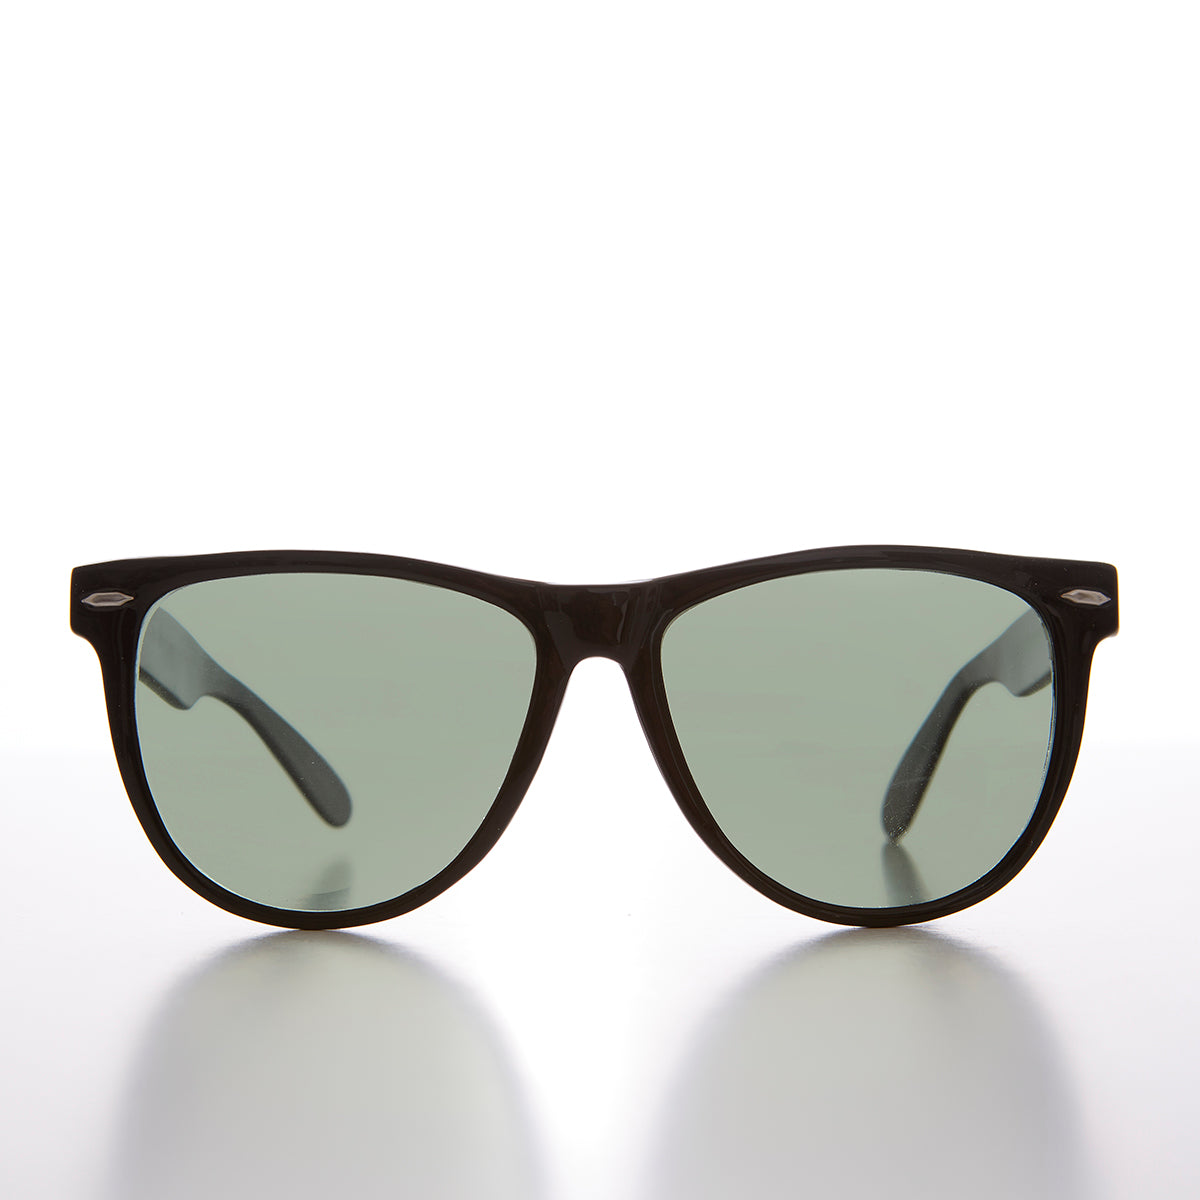 Iconic Square Unisex Vintage Sunglasses